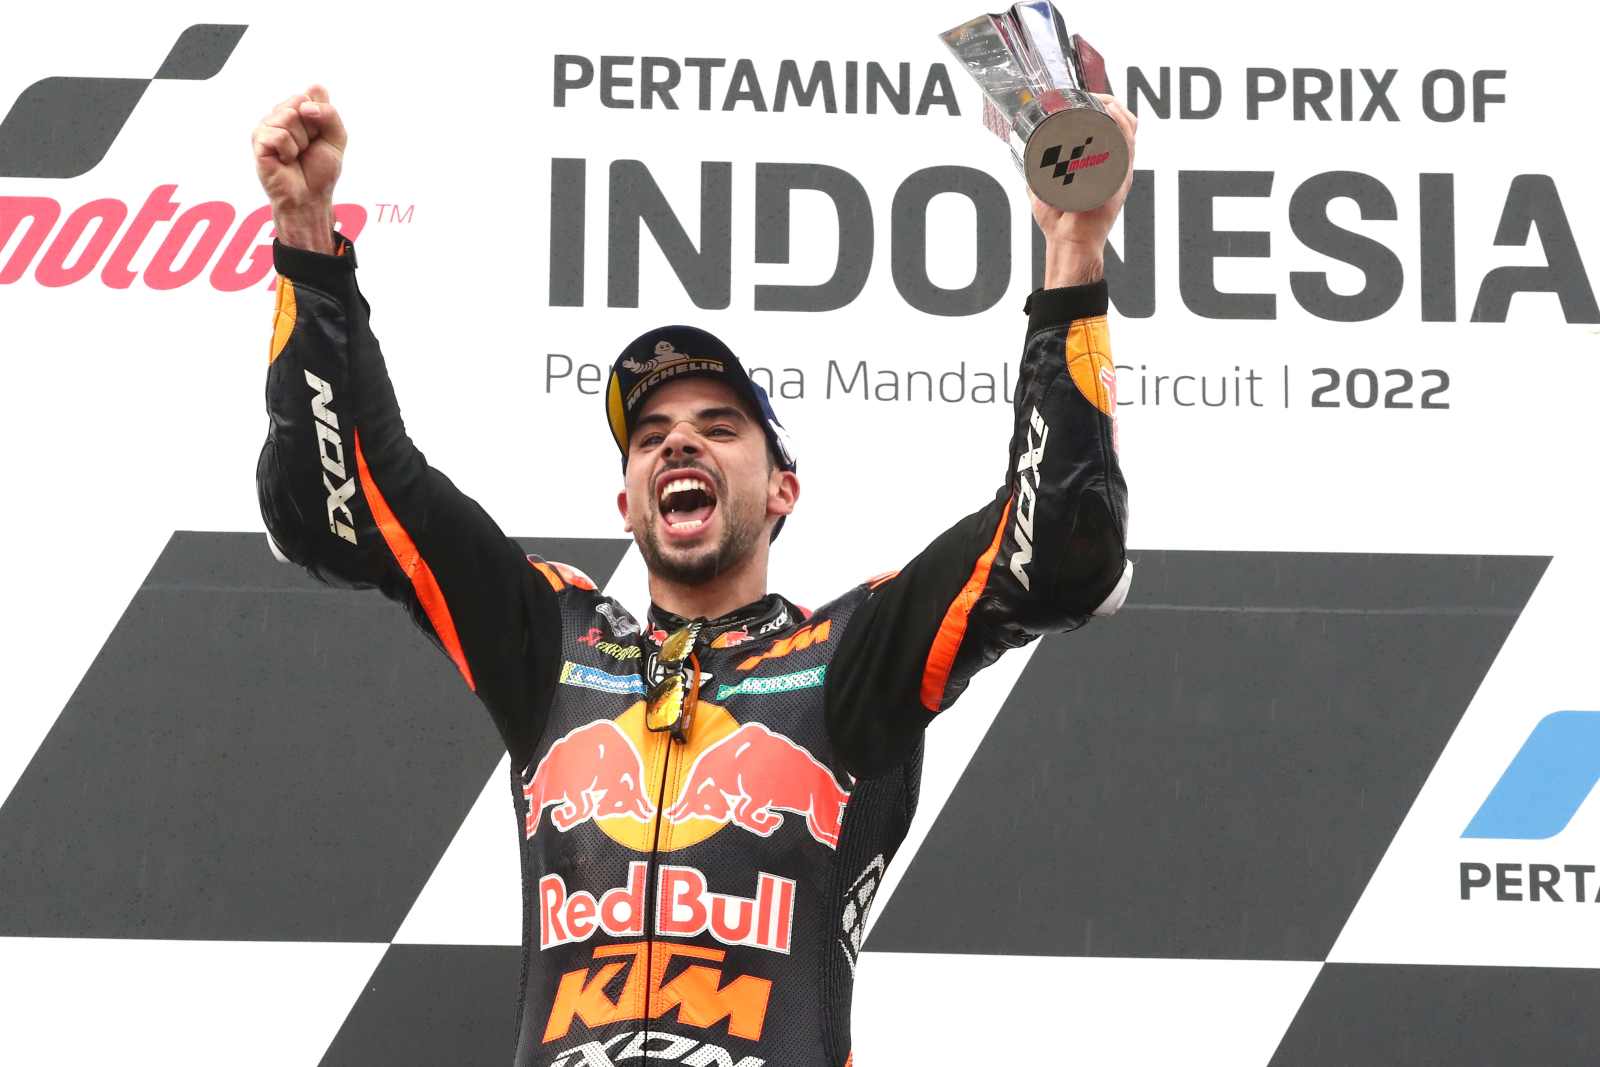 GP Indonésia: Miguel Oliveira em 10.º na corrida sprint, Jorge Martín  venceu e passa a liderar o Mundial de MotoGP